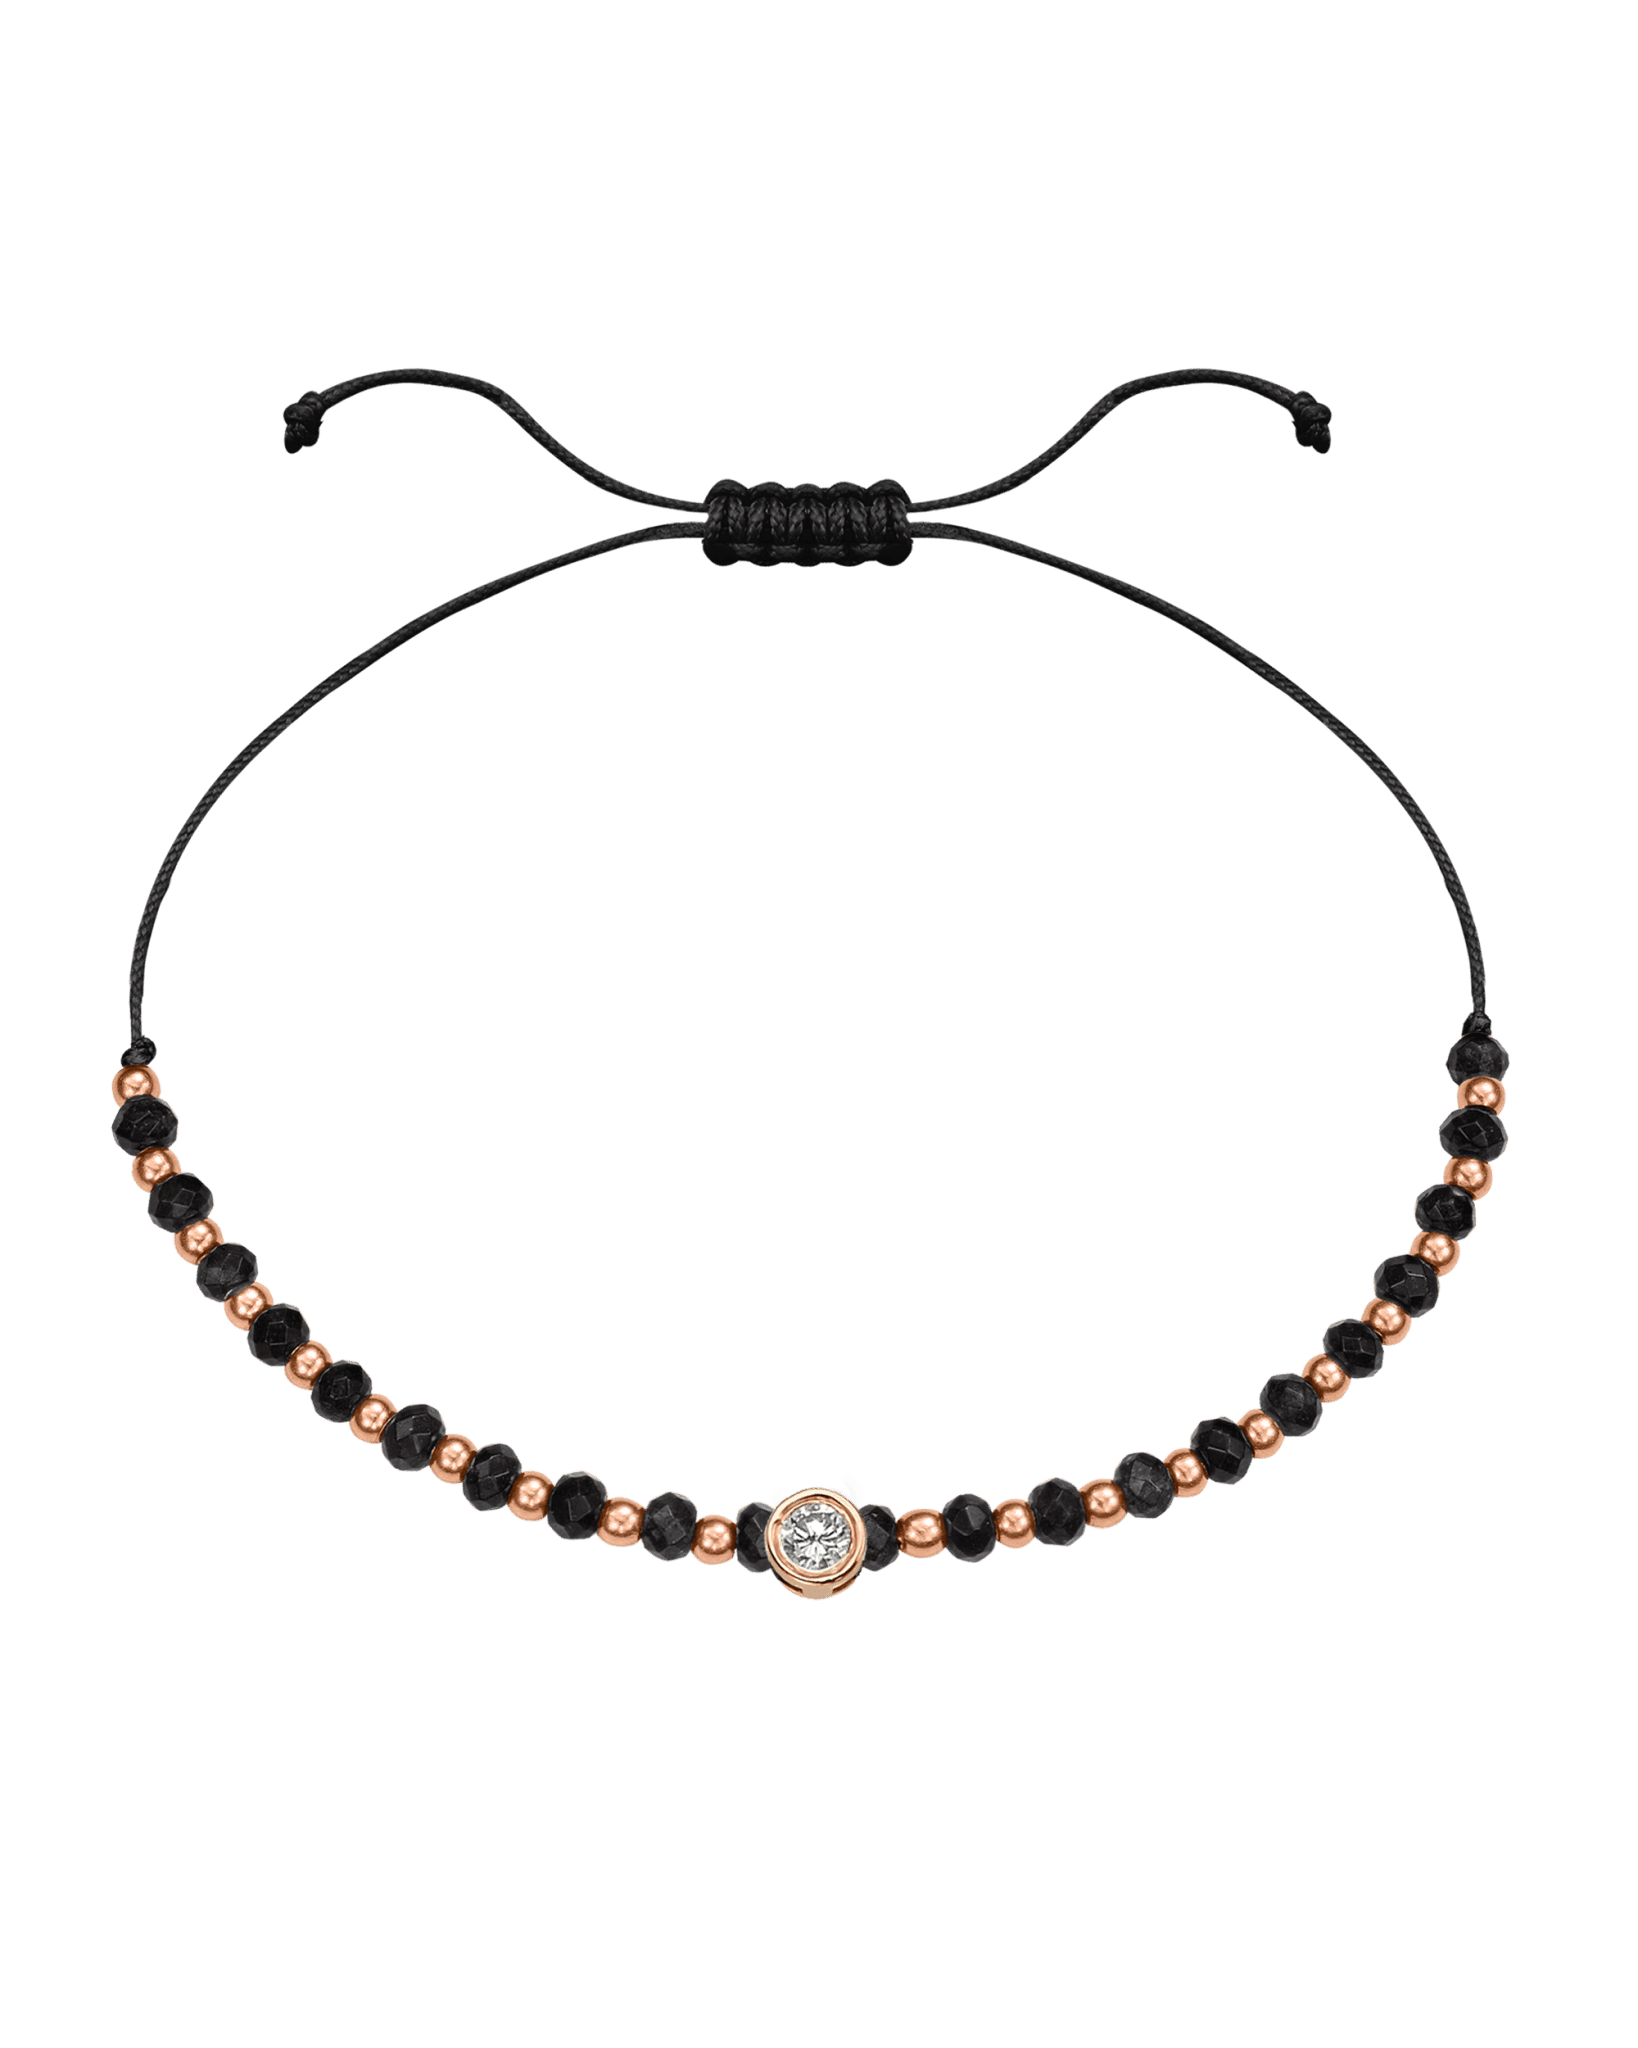 Black Onyx Gemstone String of Love Bracelet for Protection - 14K Rose Gold Bracelets 14K Solid Gold Black Large: 0.1ct 